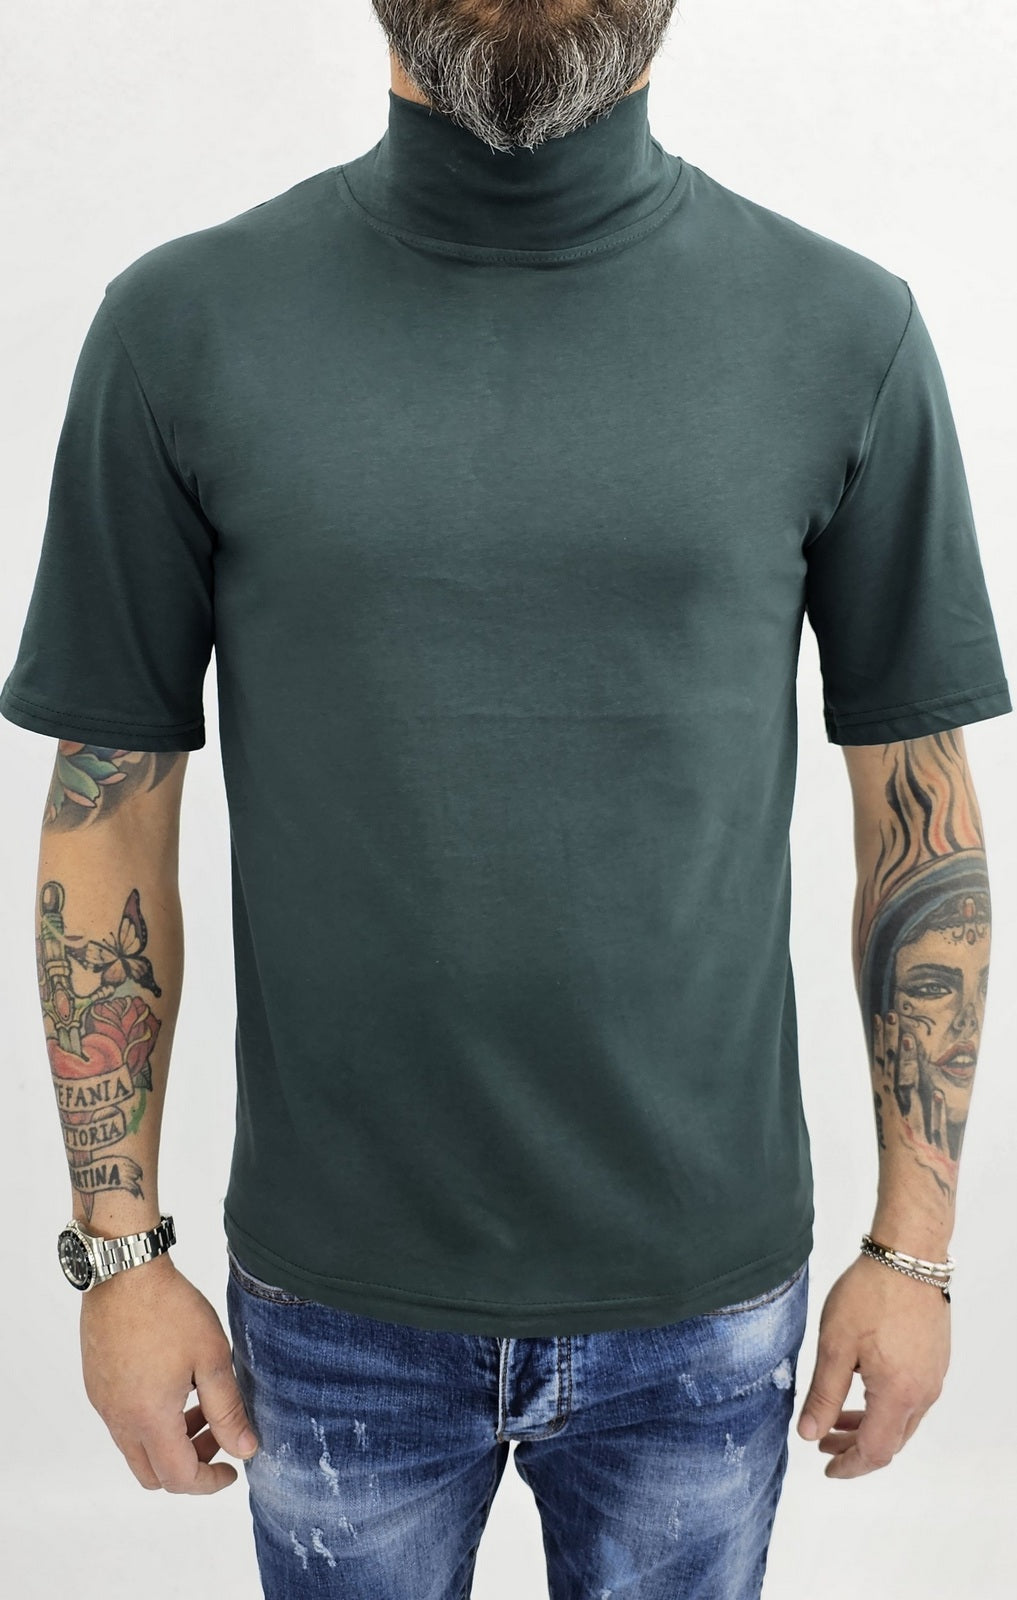 Maglia uomo mezzo collo alto cotone elastico t-shirt s,m,l,xl,xxl